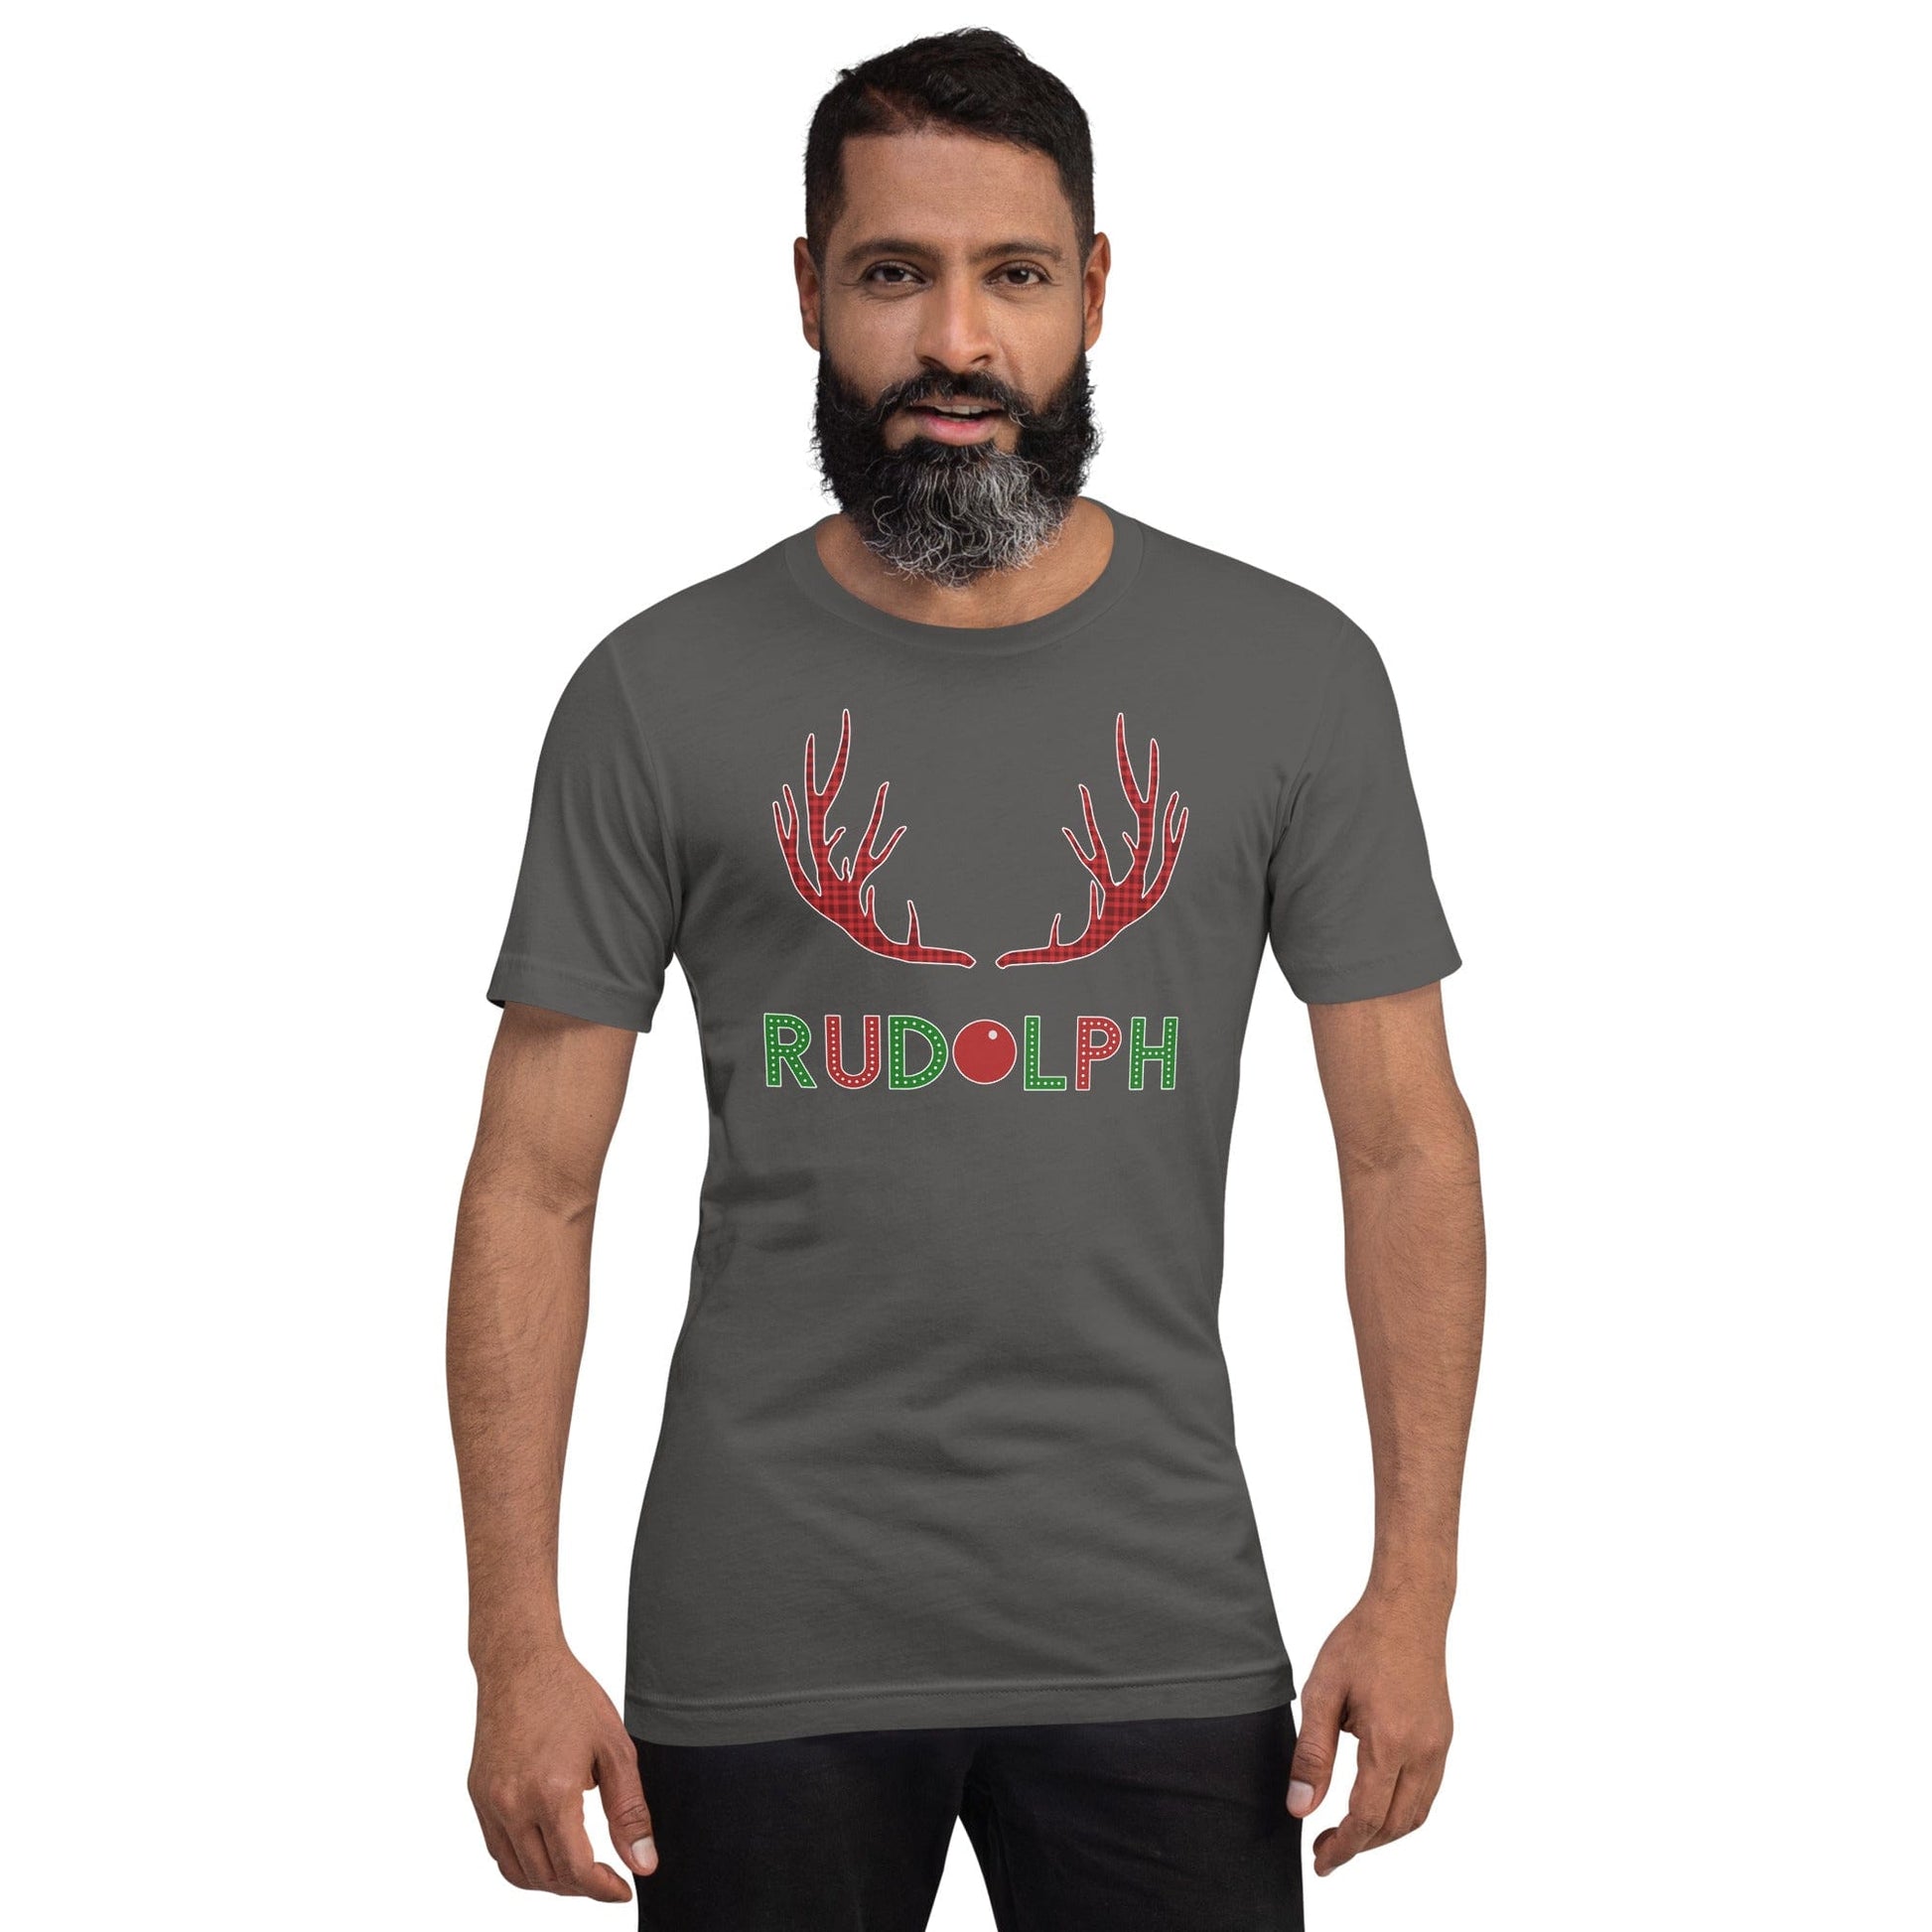 Rudolf the Reindeer T-shirt